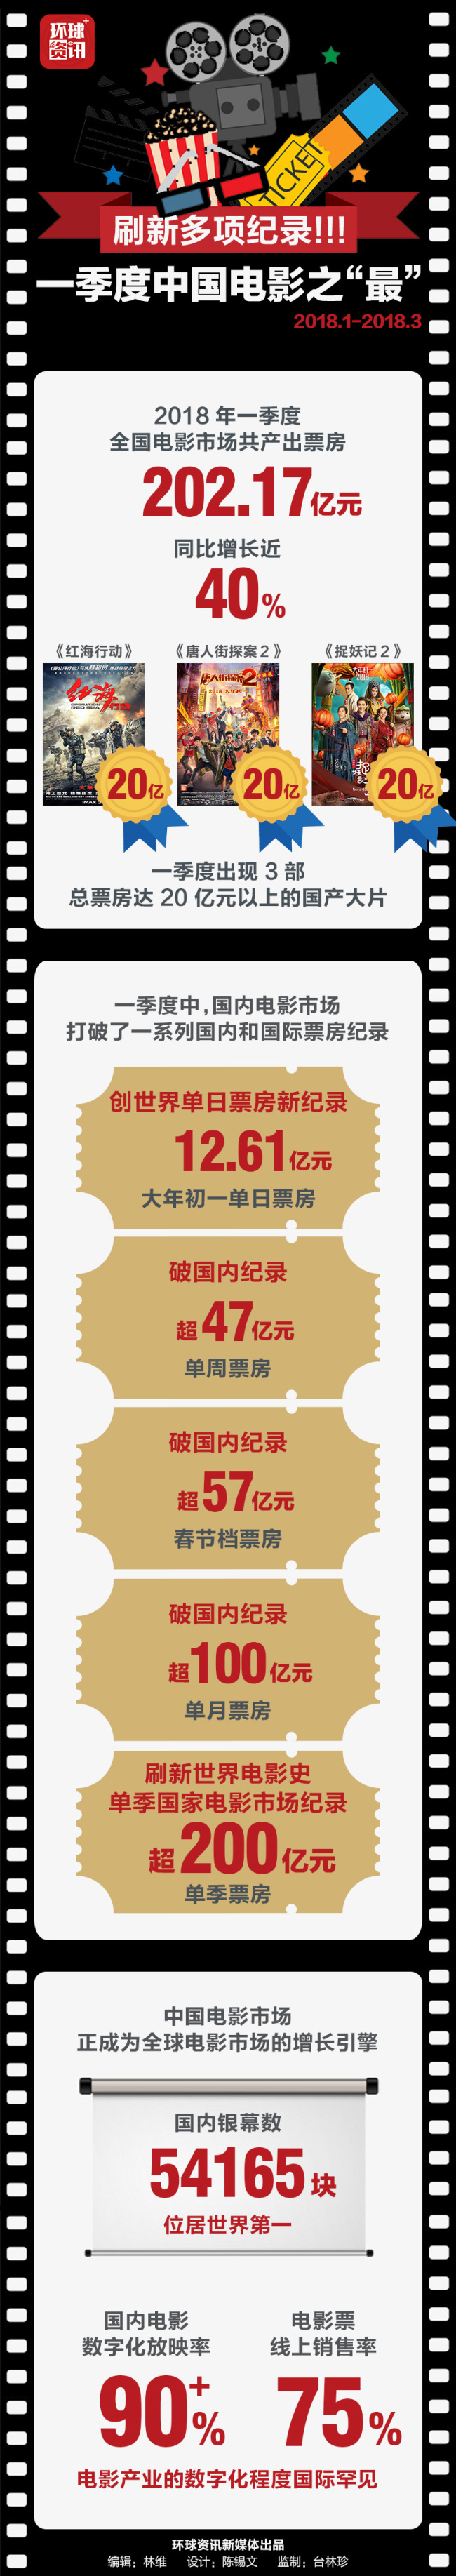 中国电影2018年一季度刷新多项纪录!